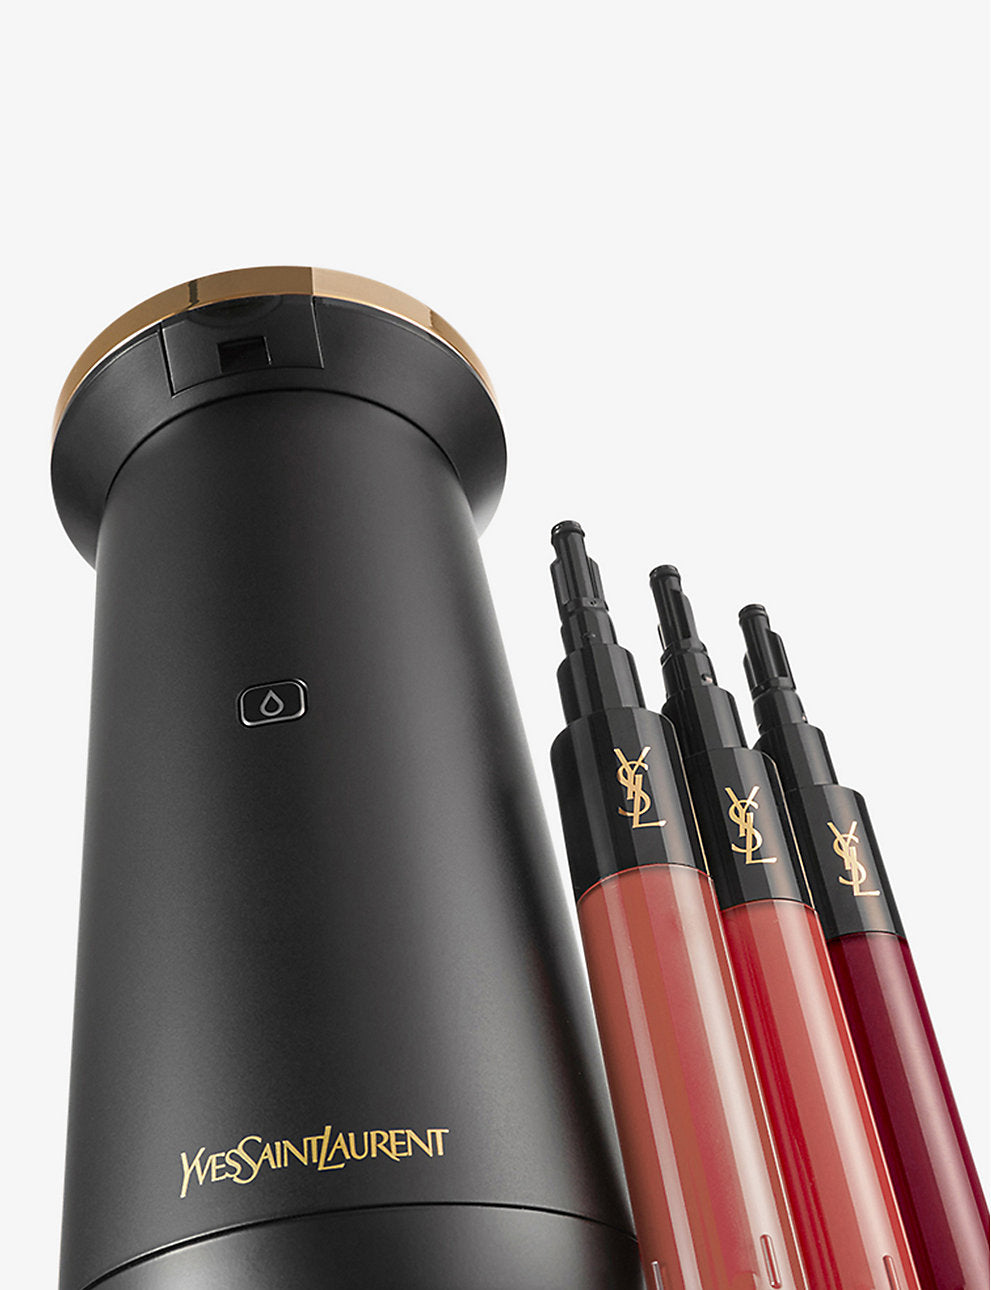 YVES SAINT LAURENT Rouge Sur Mesure lipstick personalisation device